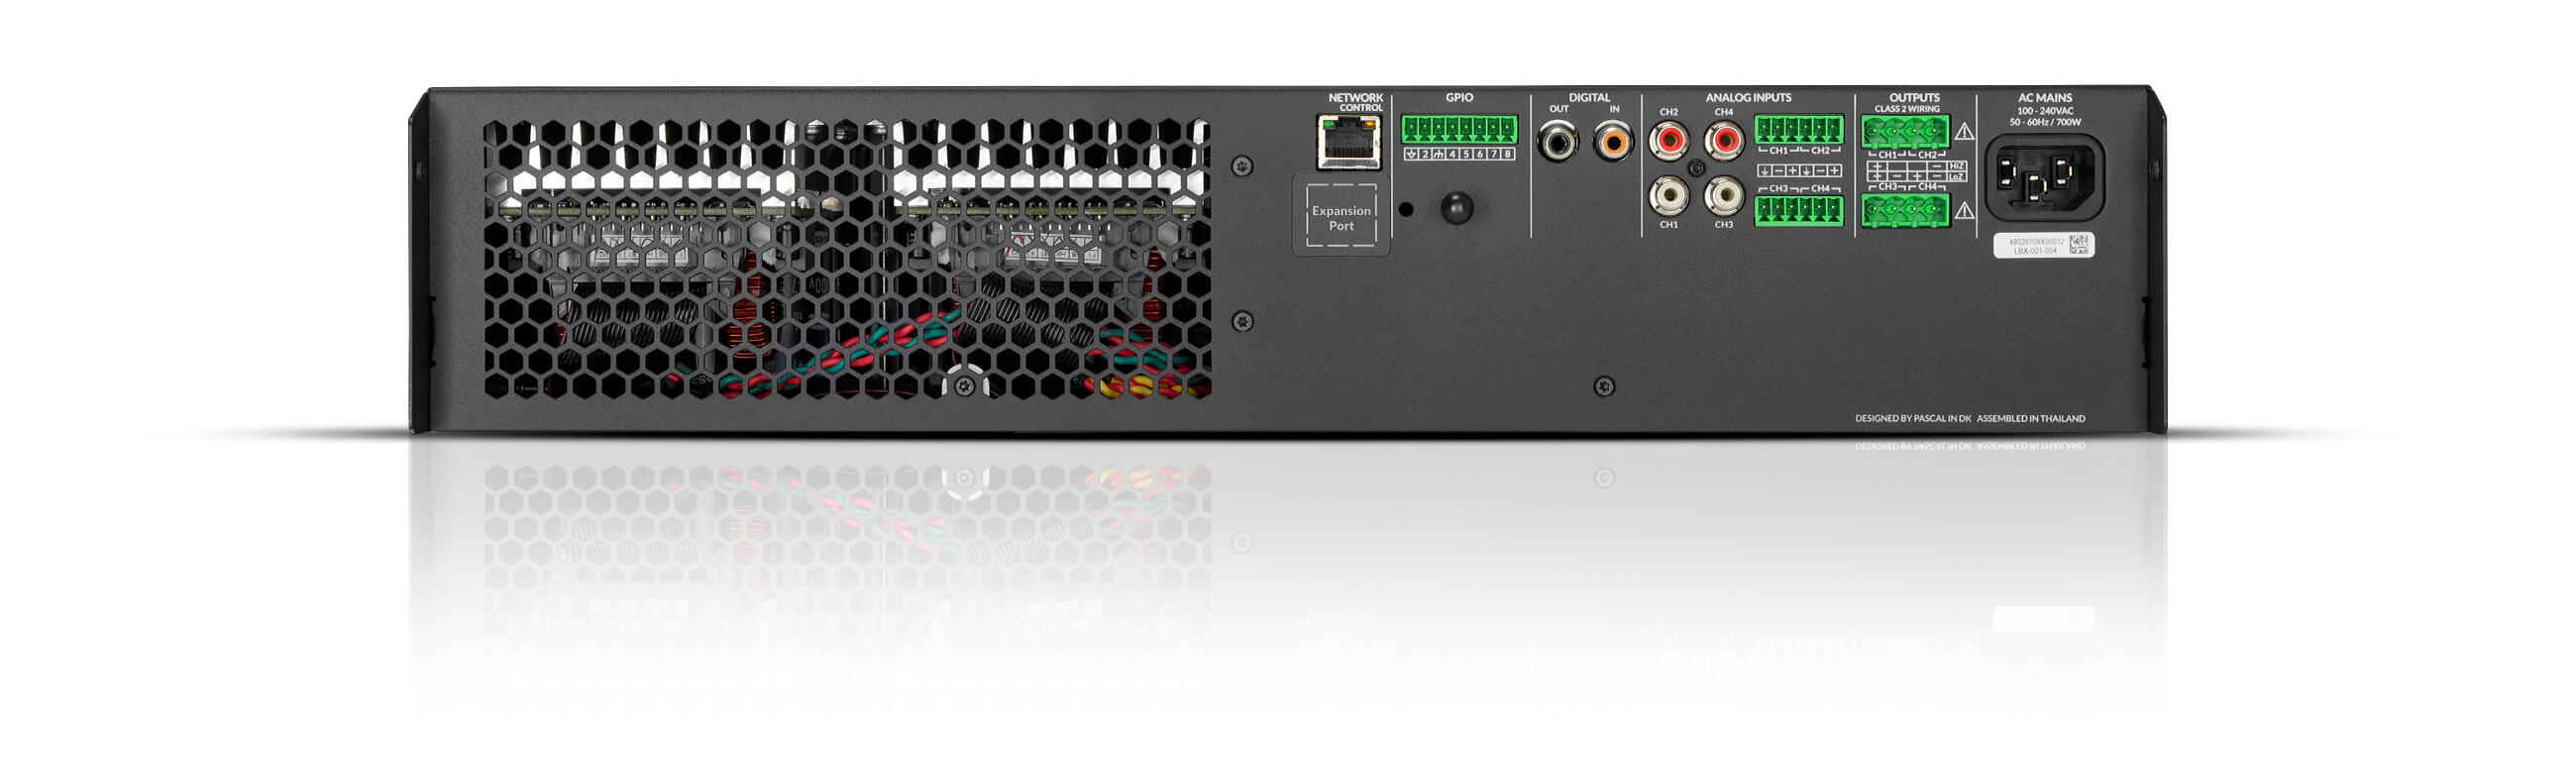 NEXT-Audiocom-M804-DSP-Back